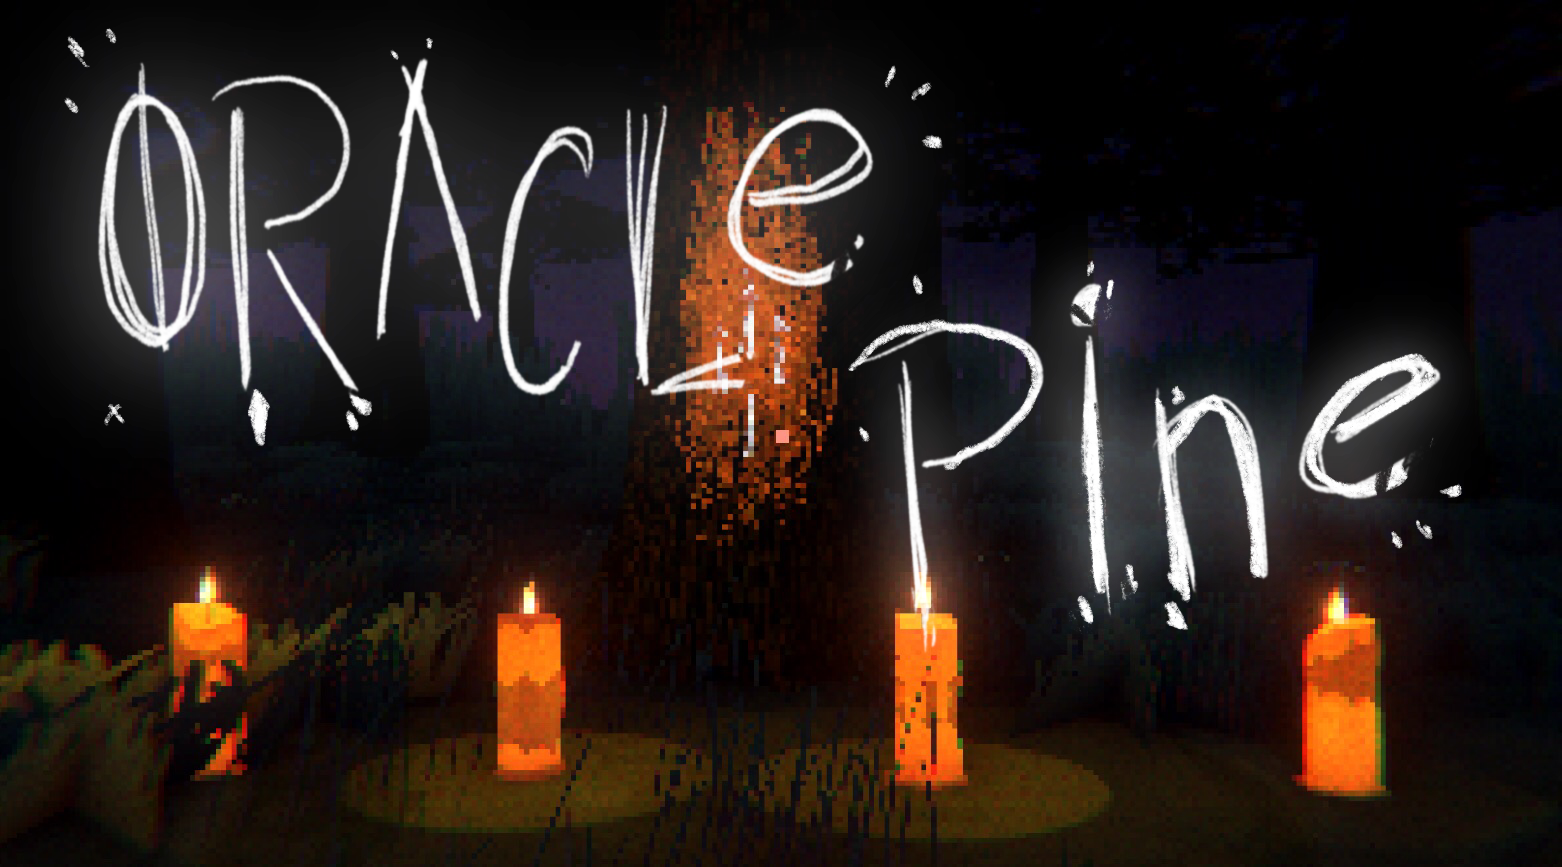 Oracle Pine